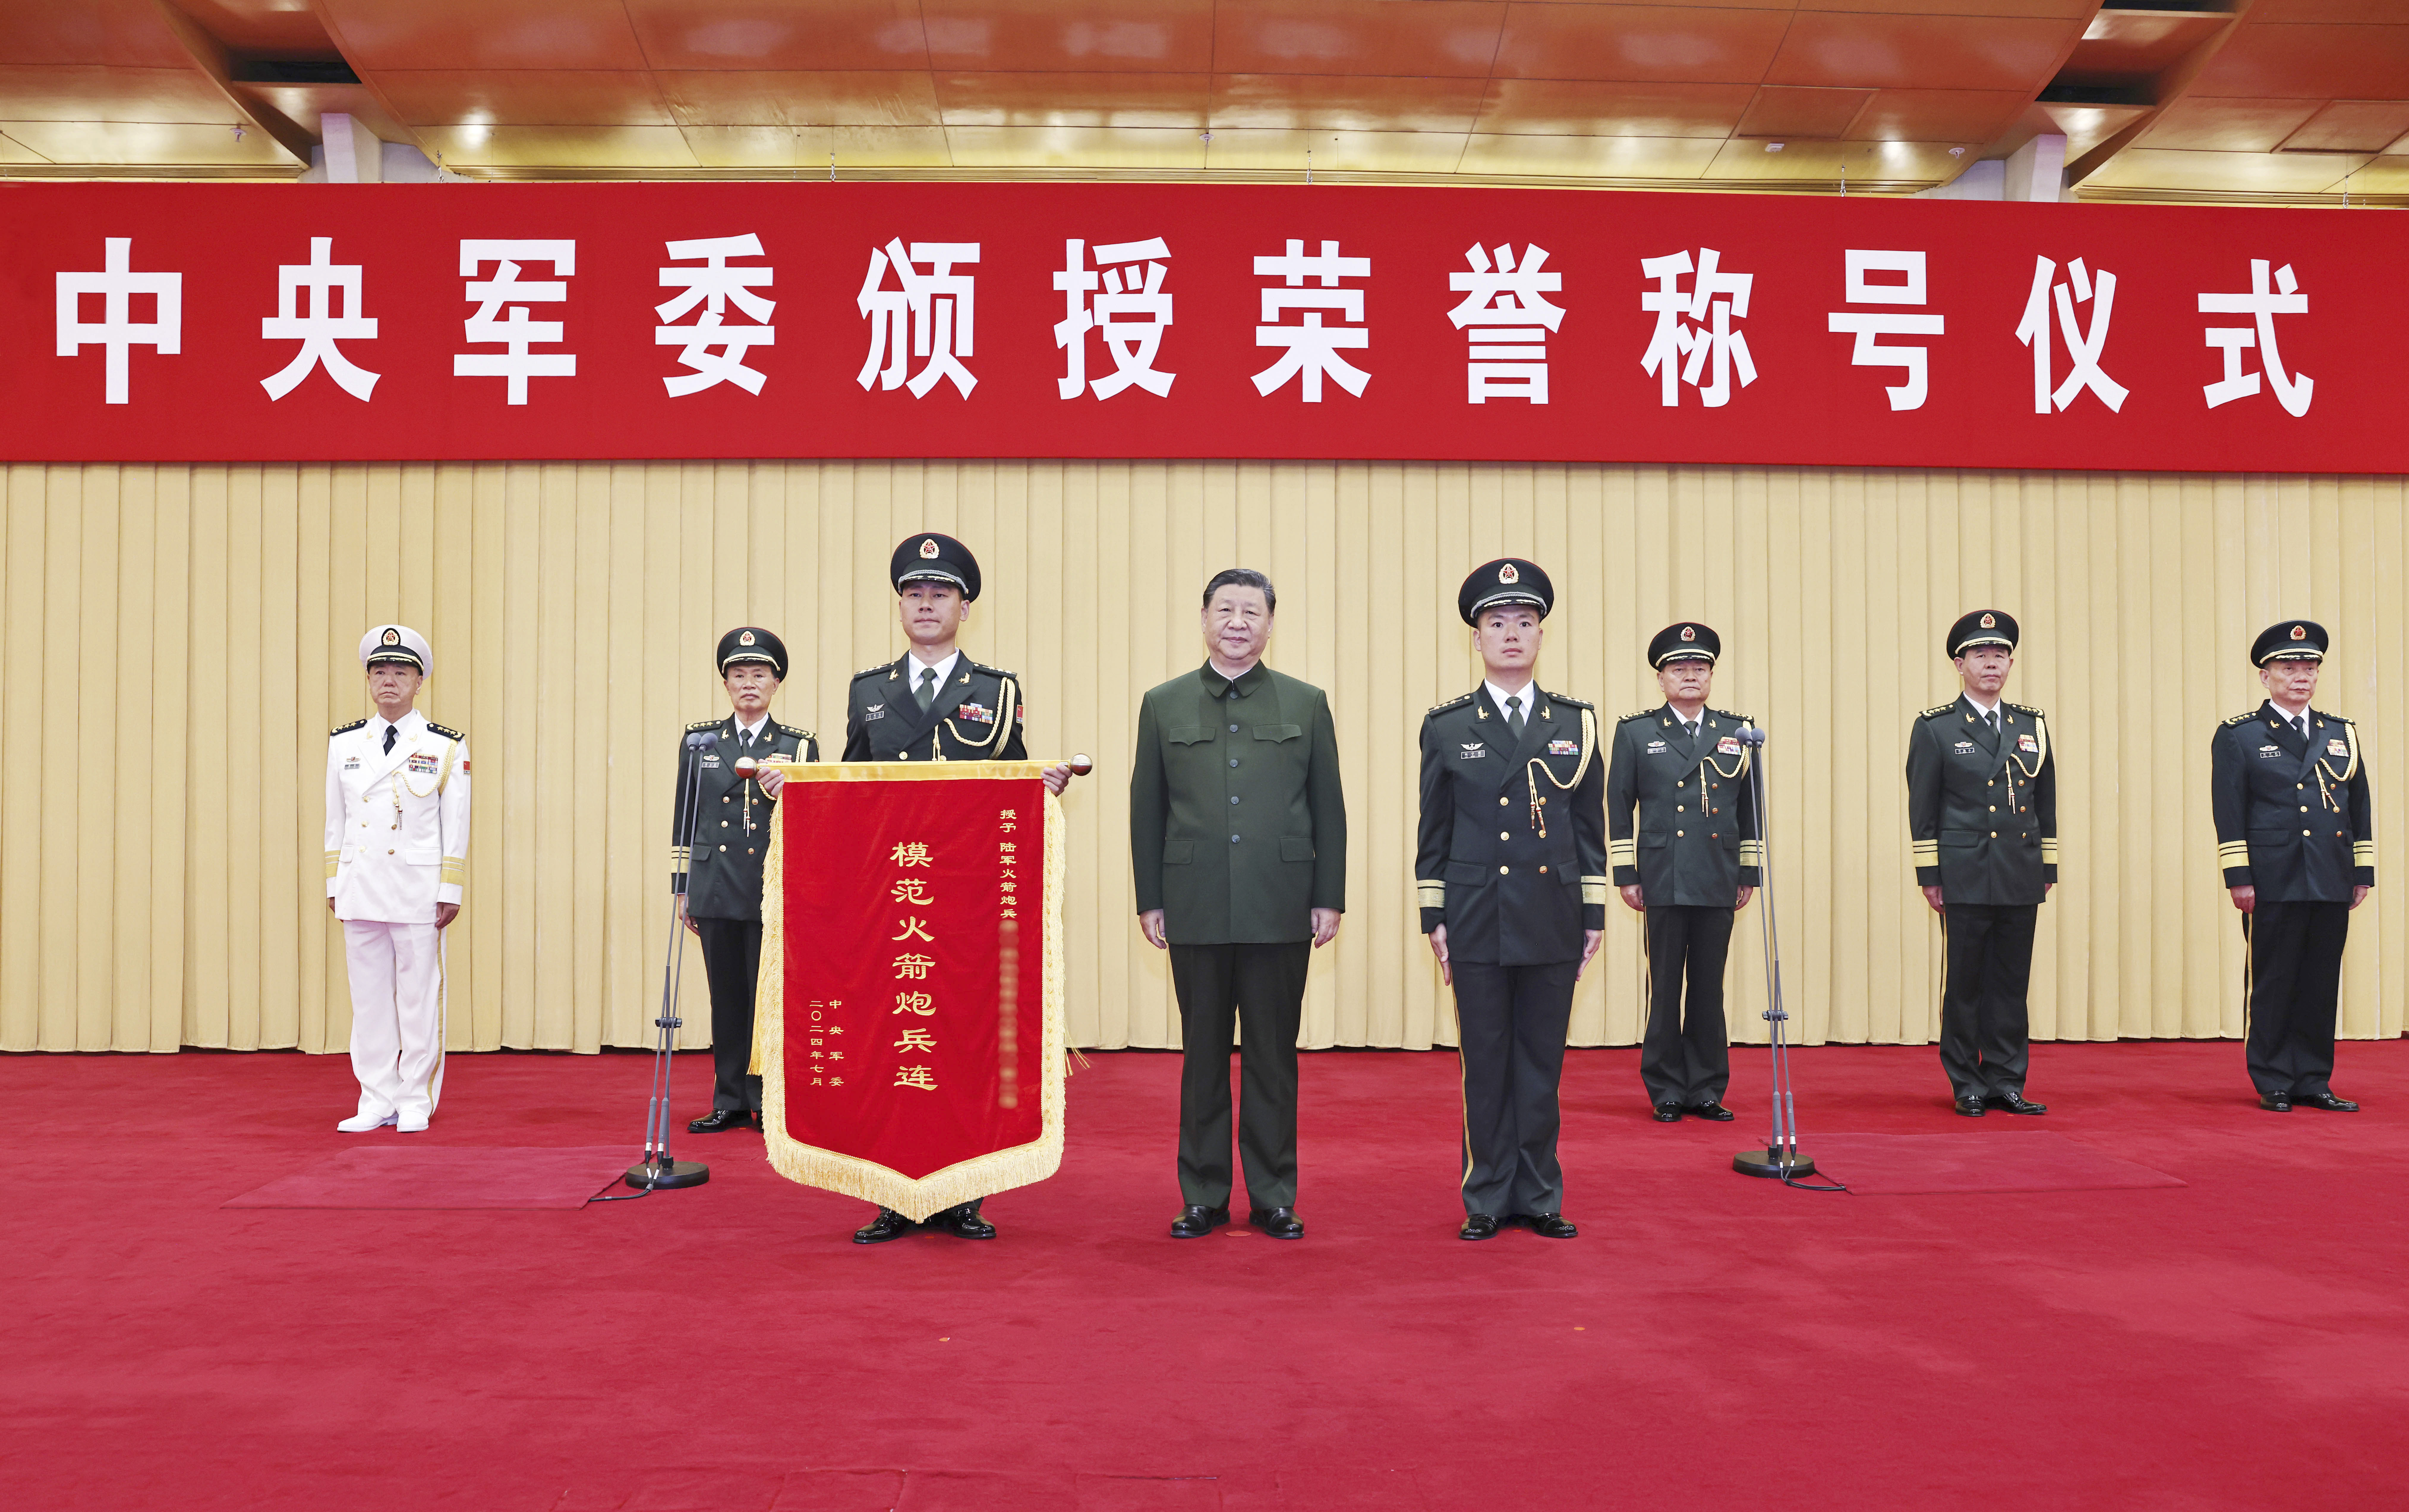 中央军委举行荣誉称号颁授仪式 习近平向获得荣誉称号的单位颁授奖旗